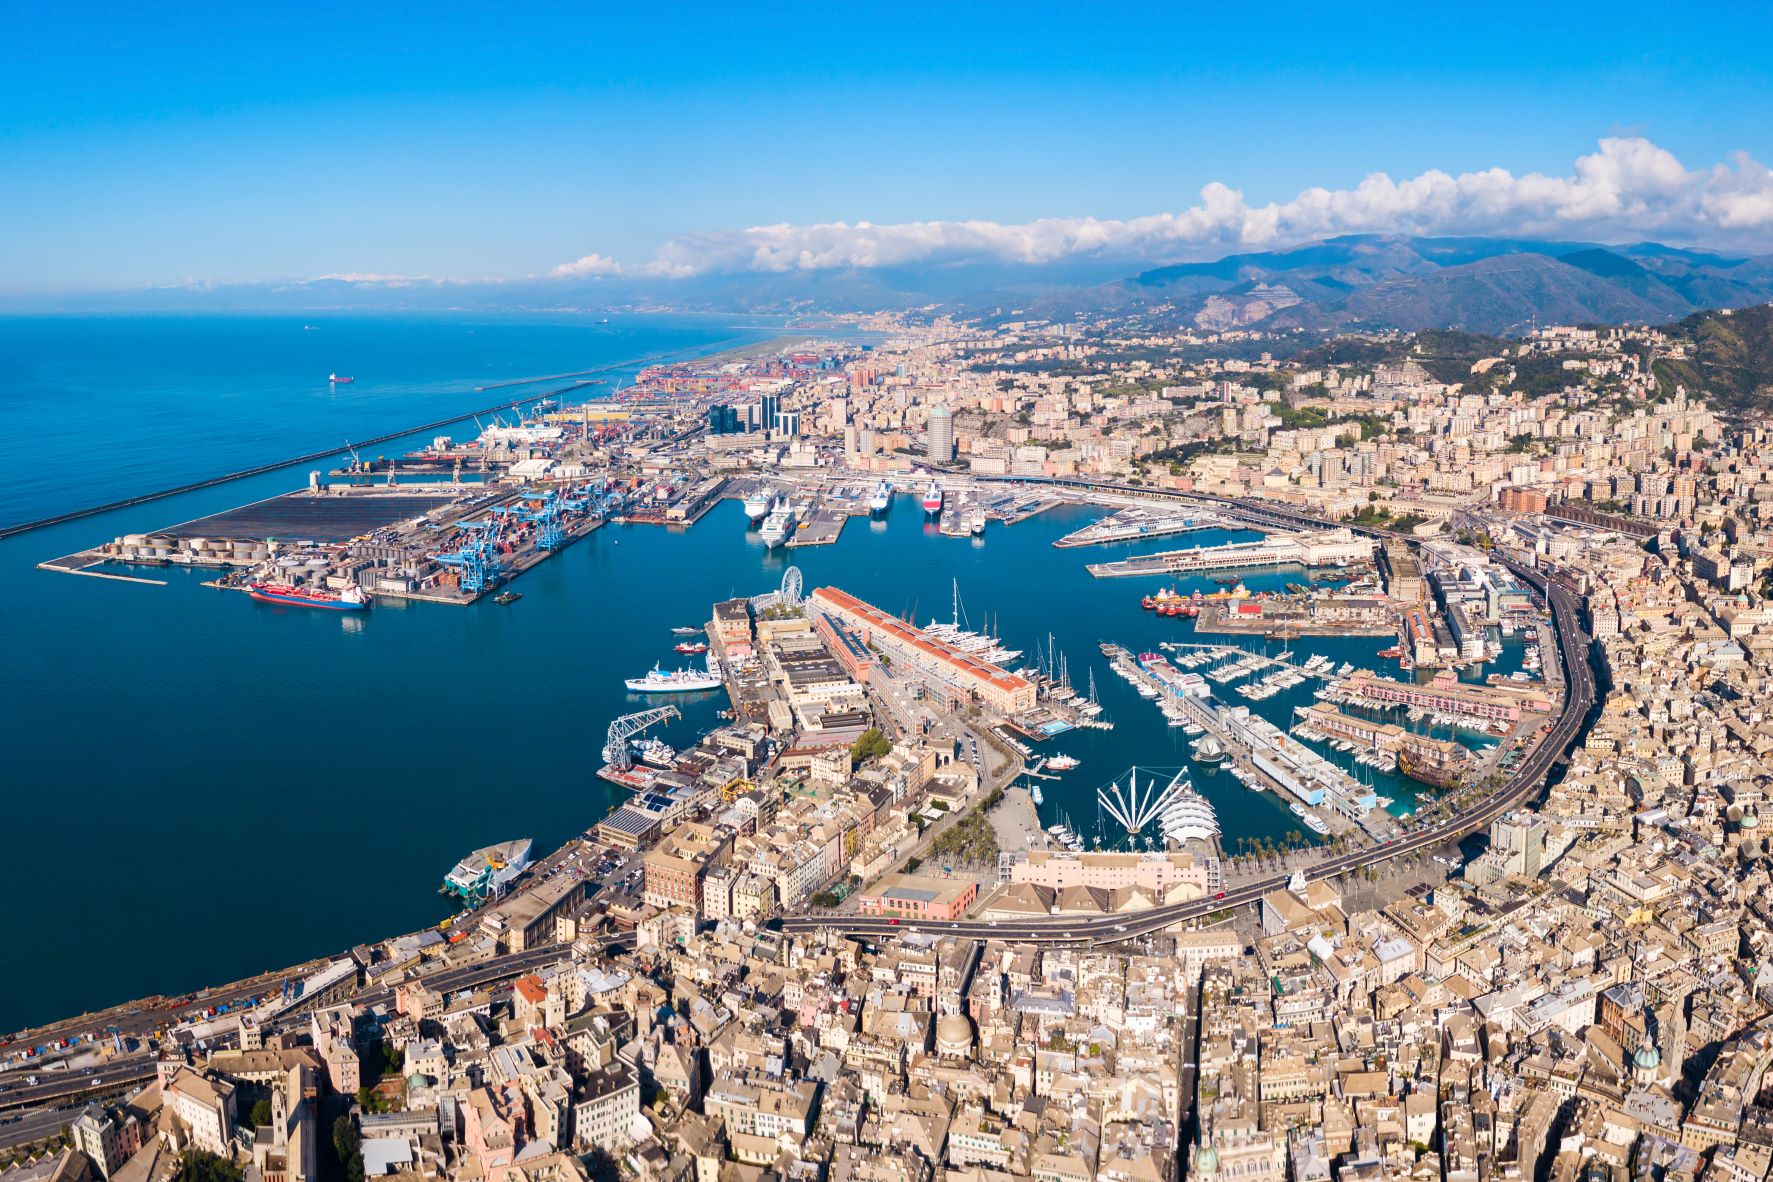 Port of Genoa. Credit: Shutterstock